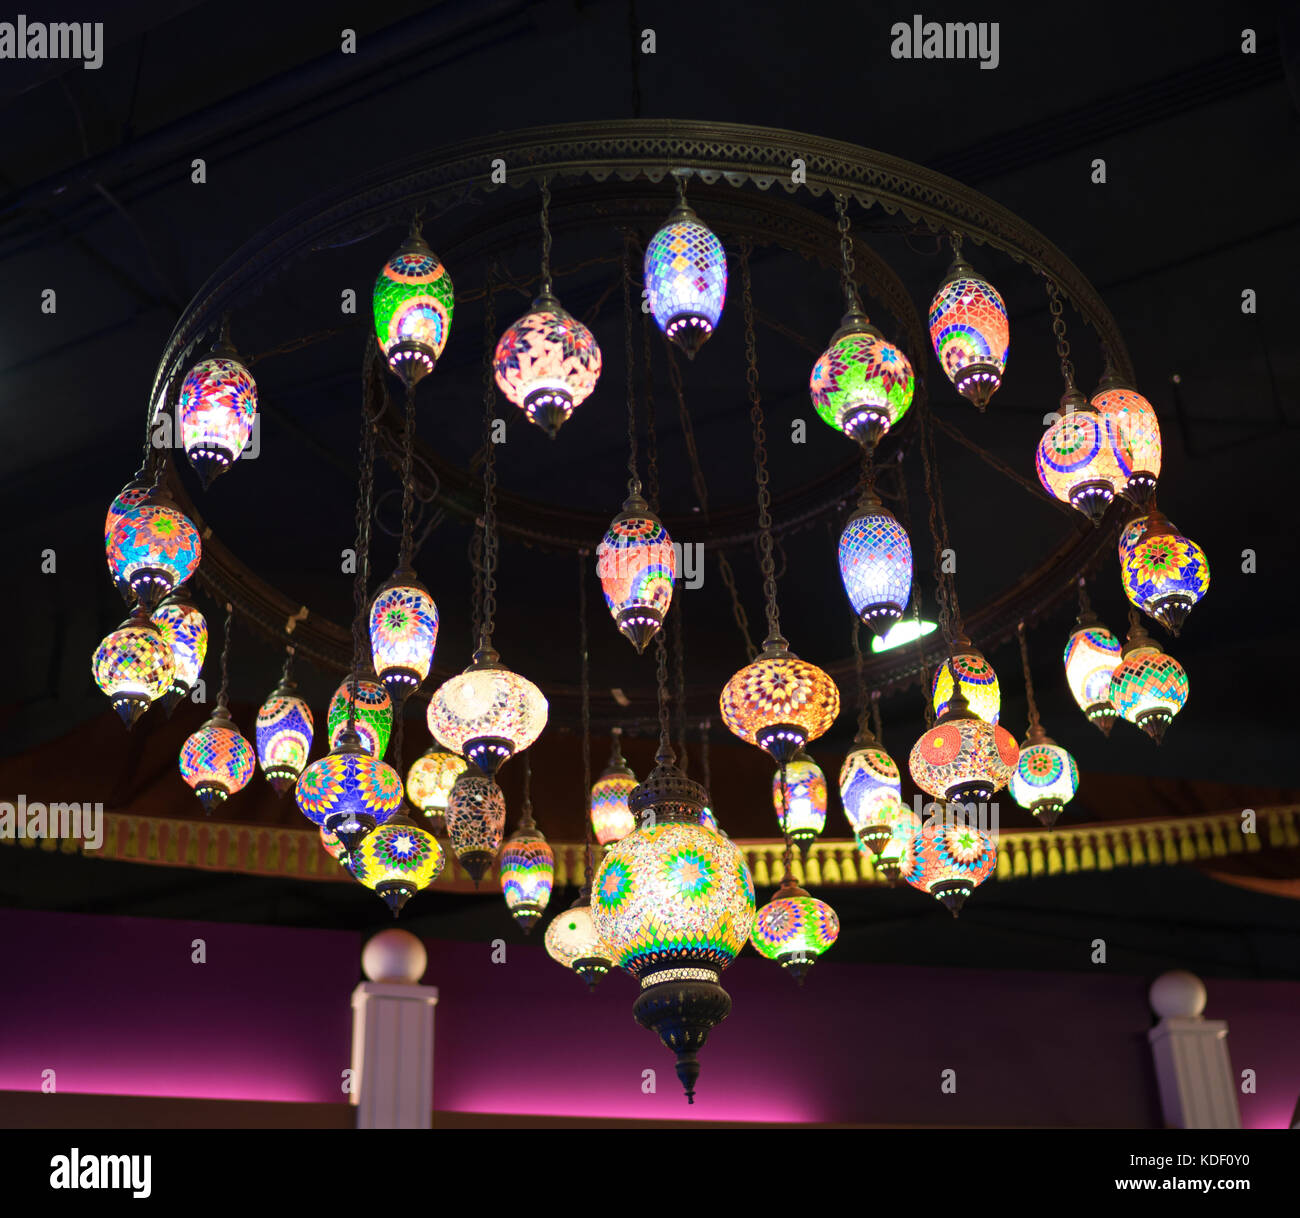 Linternas coloridas de los países árabes. Esta lámpara colgando en los centros comerciales. Foto de stock